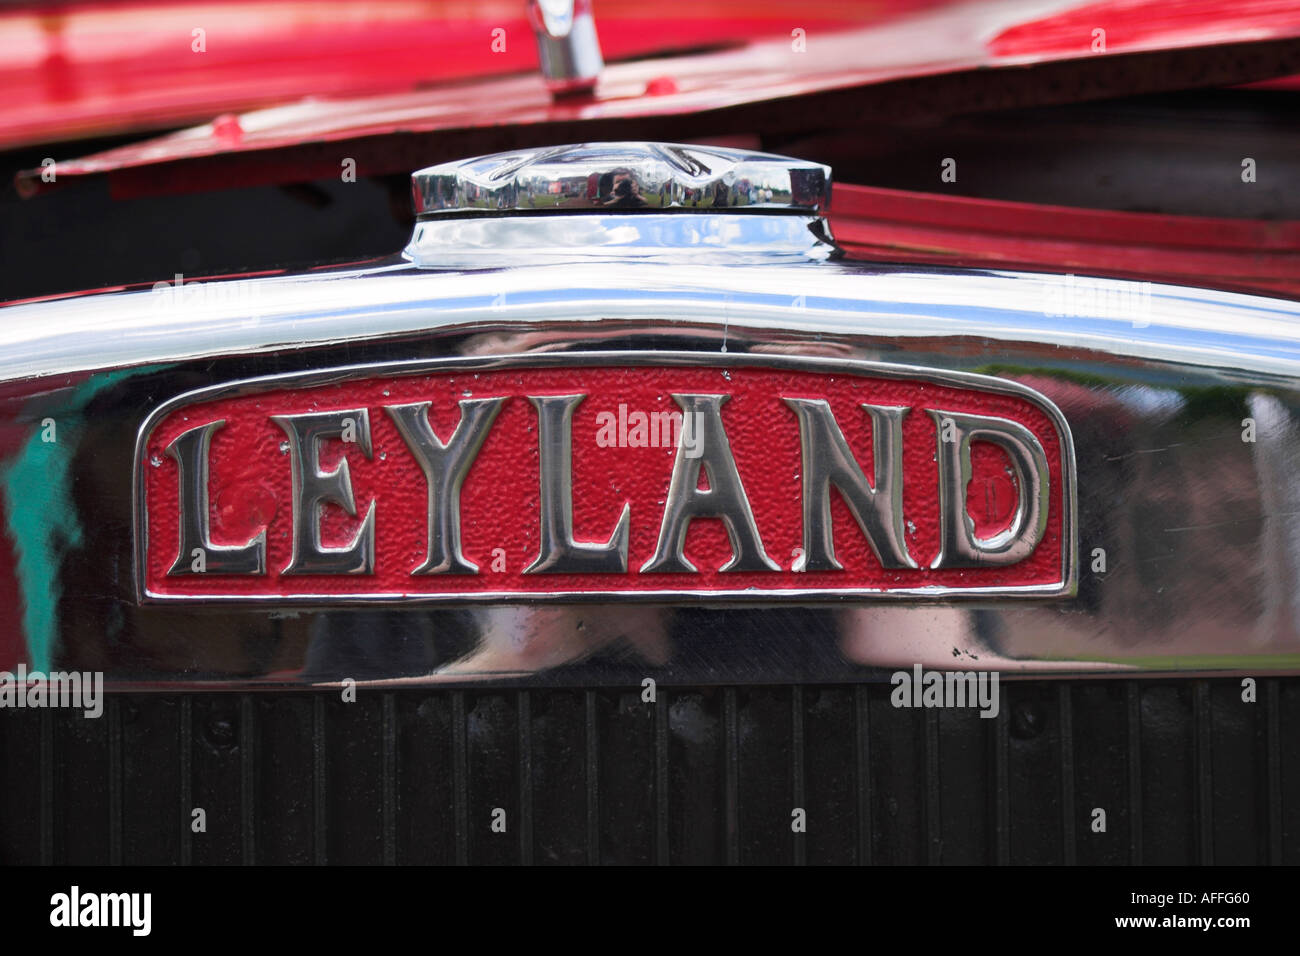 Badge Leyland sur l'avant un incendie moteur. Morecambe, Lancashire, Royaume-Uni Banque D'Images